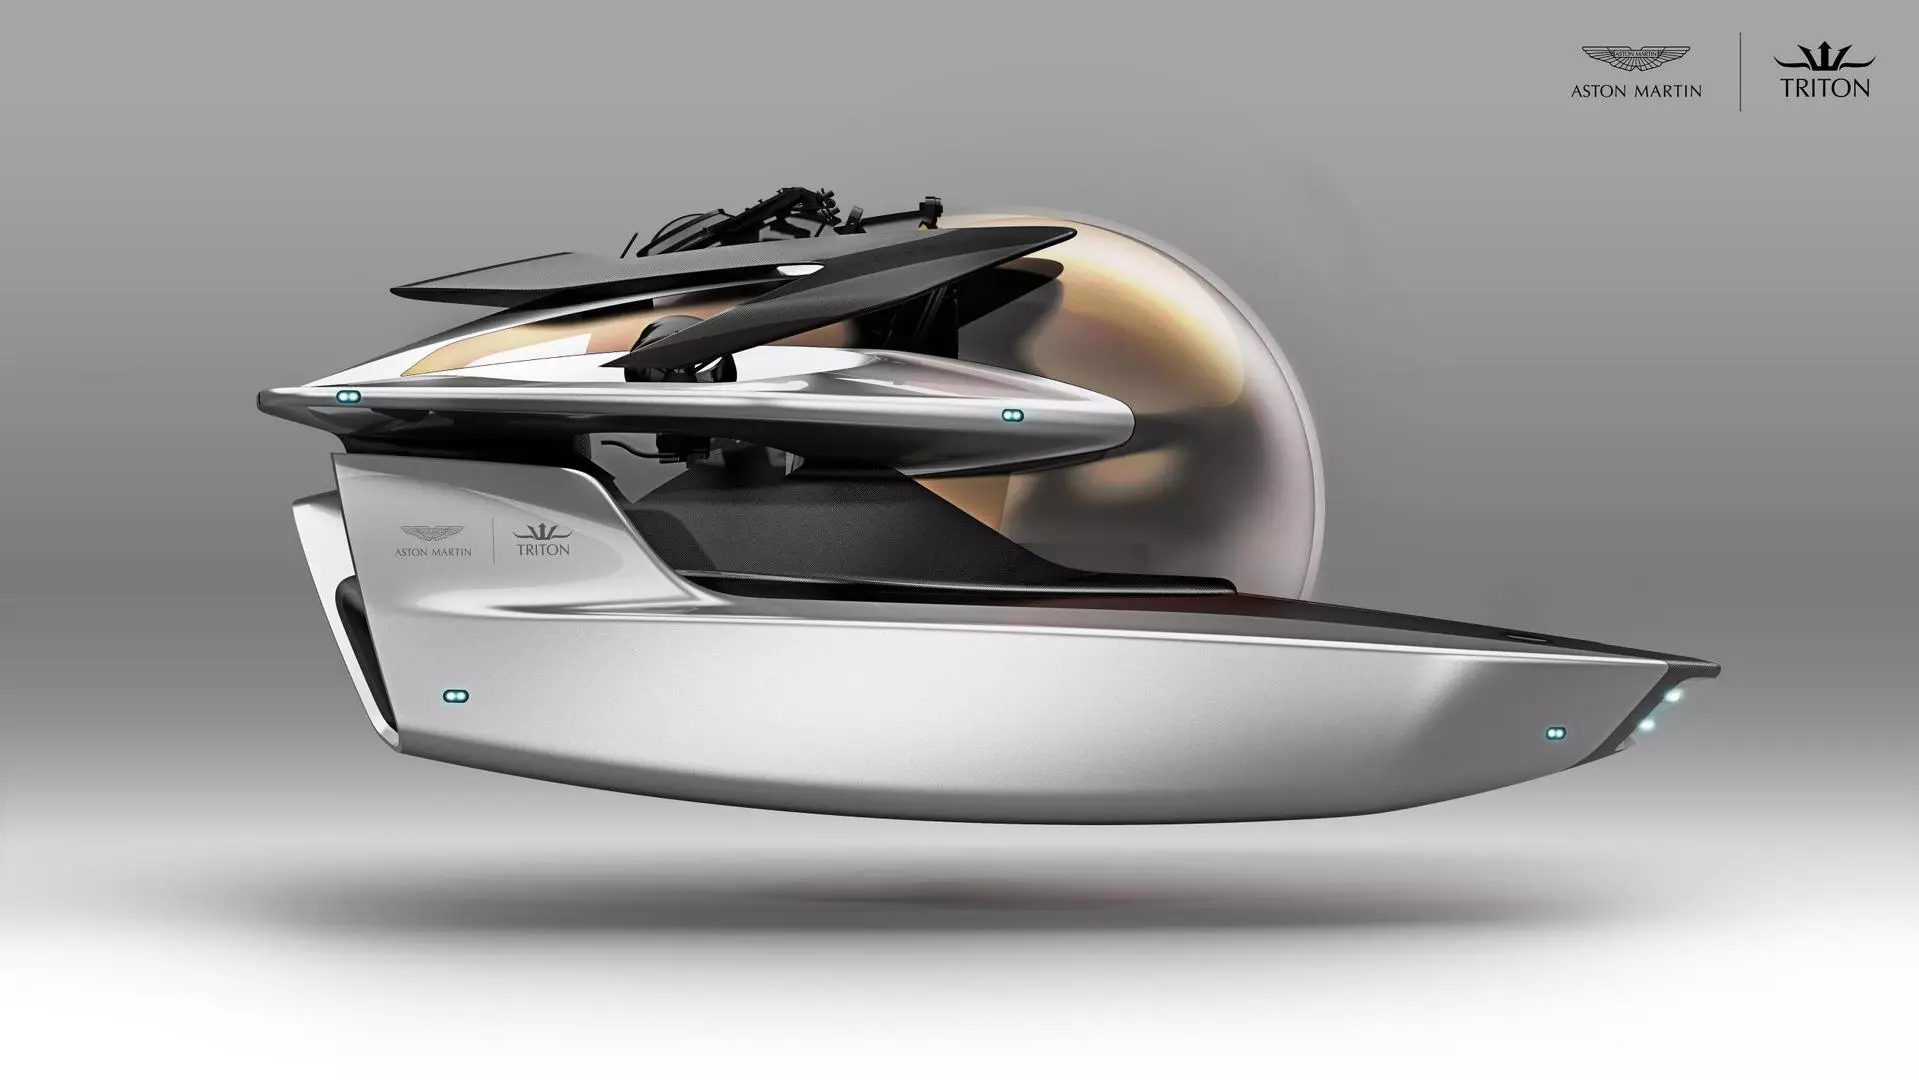 Project Neptuno is Aston Martin's luxury submarine